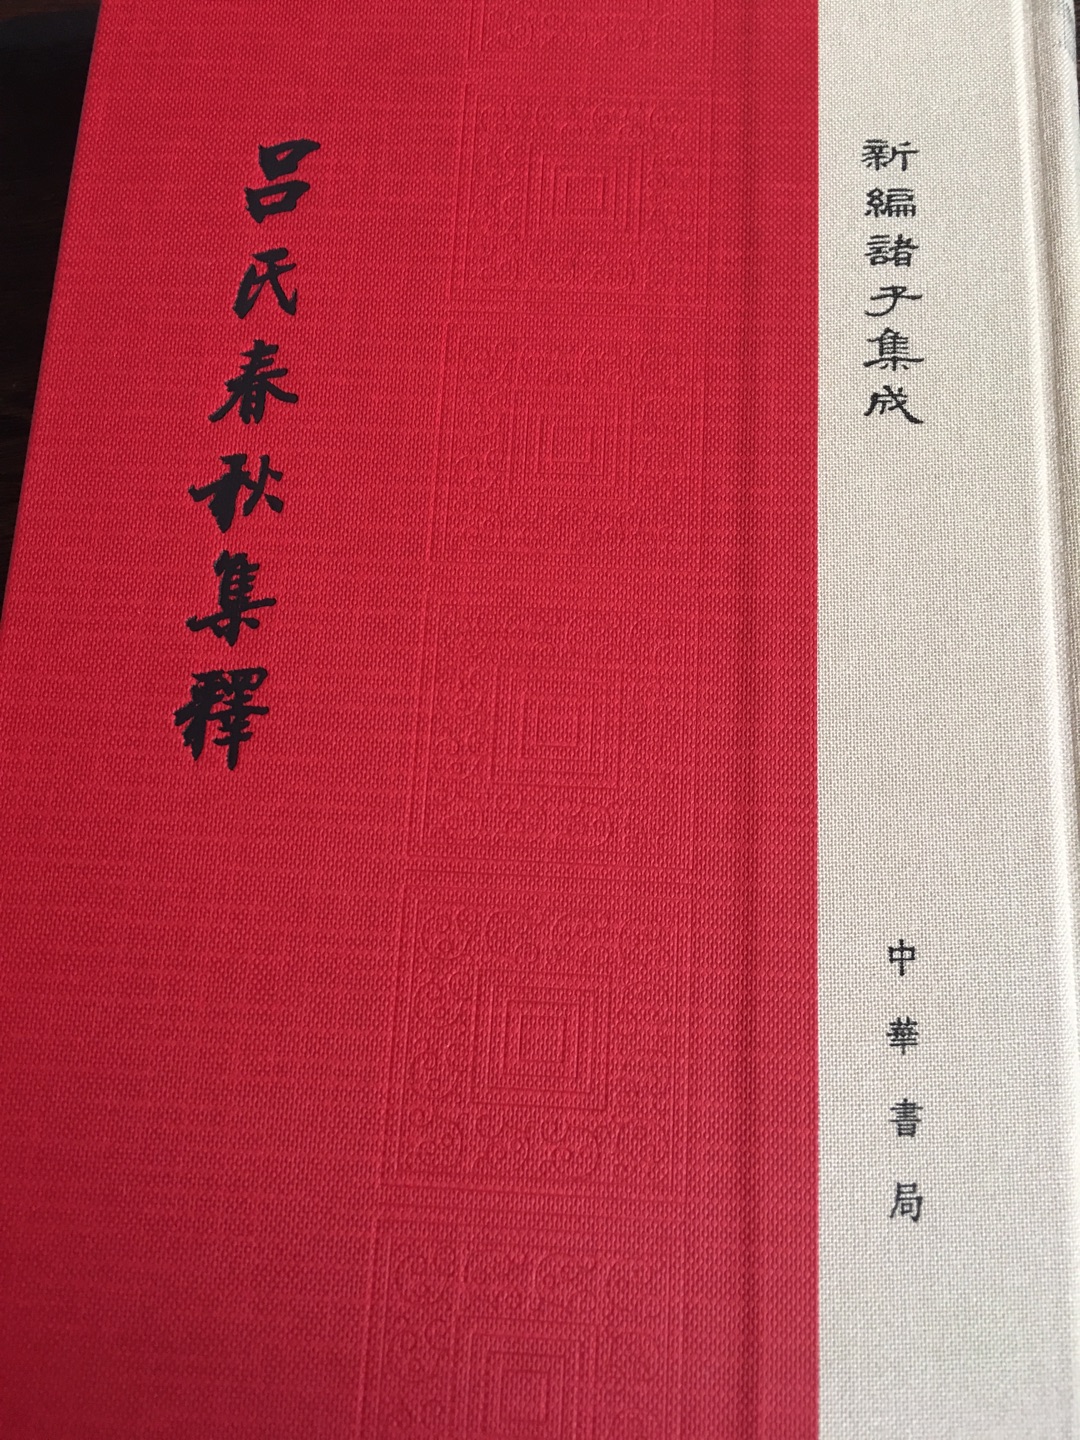 古典书籍一直买中华书局  就是很多缺货的一直没货 为什么呢 还是一印